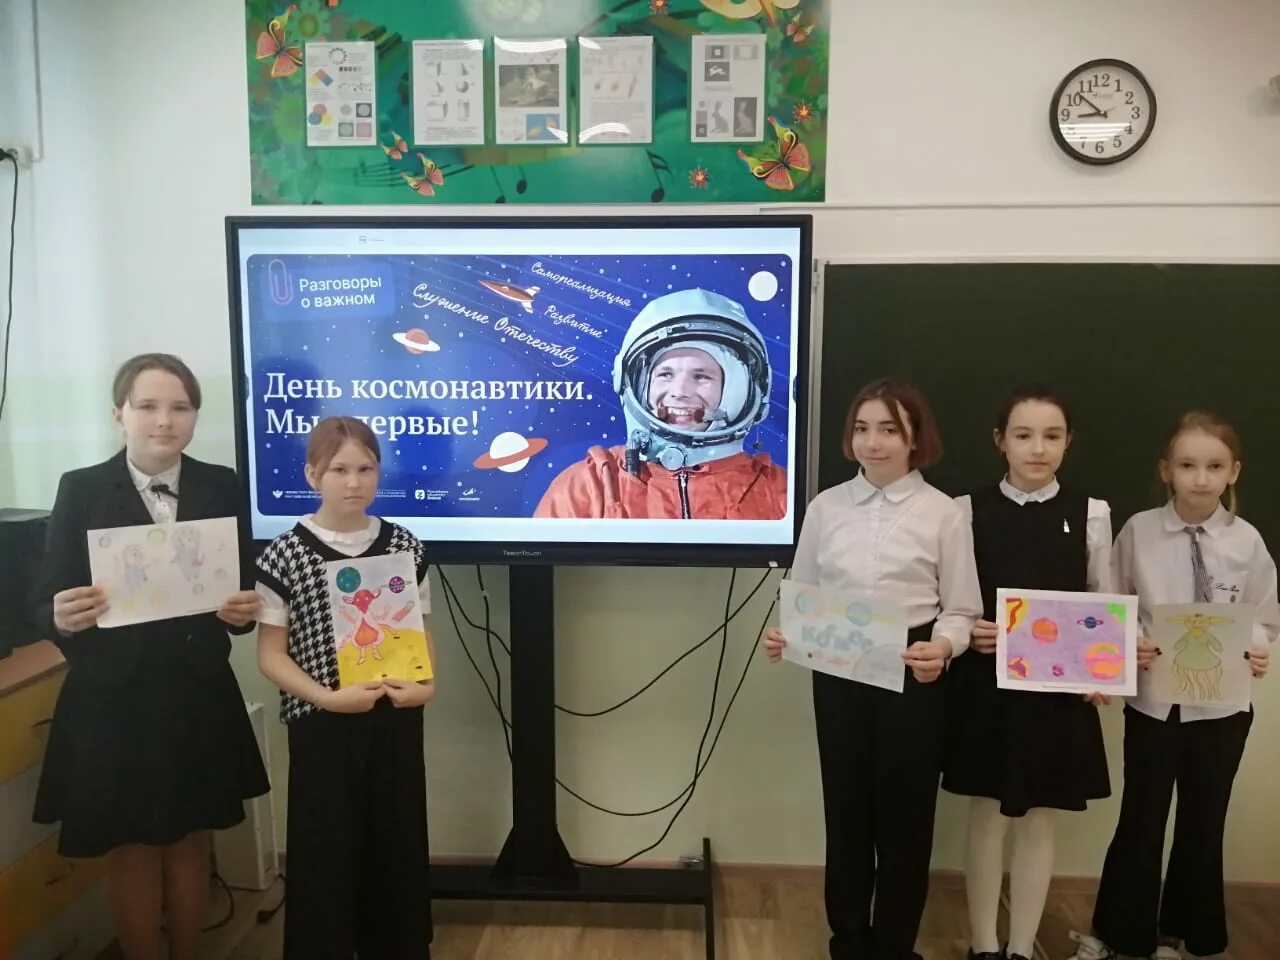 Разговоры о важном день космонавтики мы первые. Тема космонавтики. День космонавтики. Урок астрономии в школе. Школьный проект.